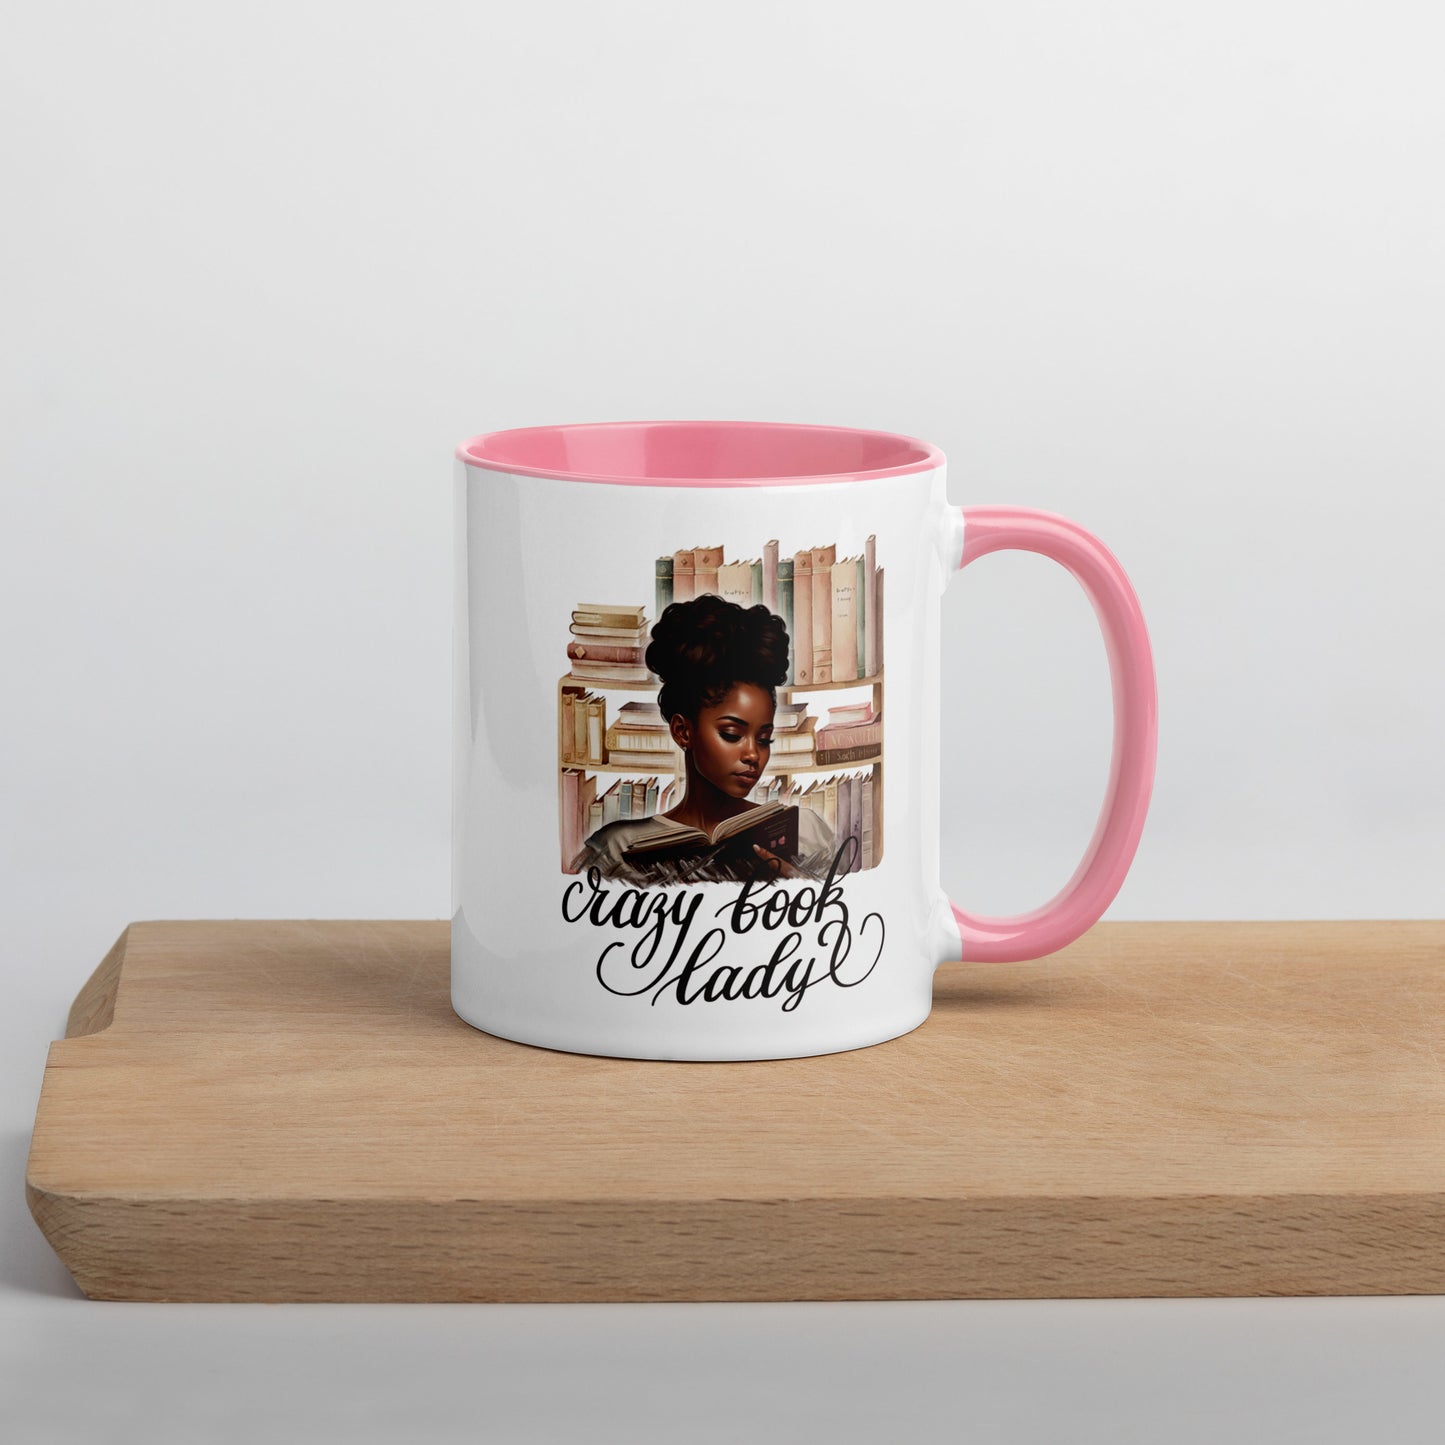 "Crazy Book Lady' Mug with Color Inside